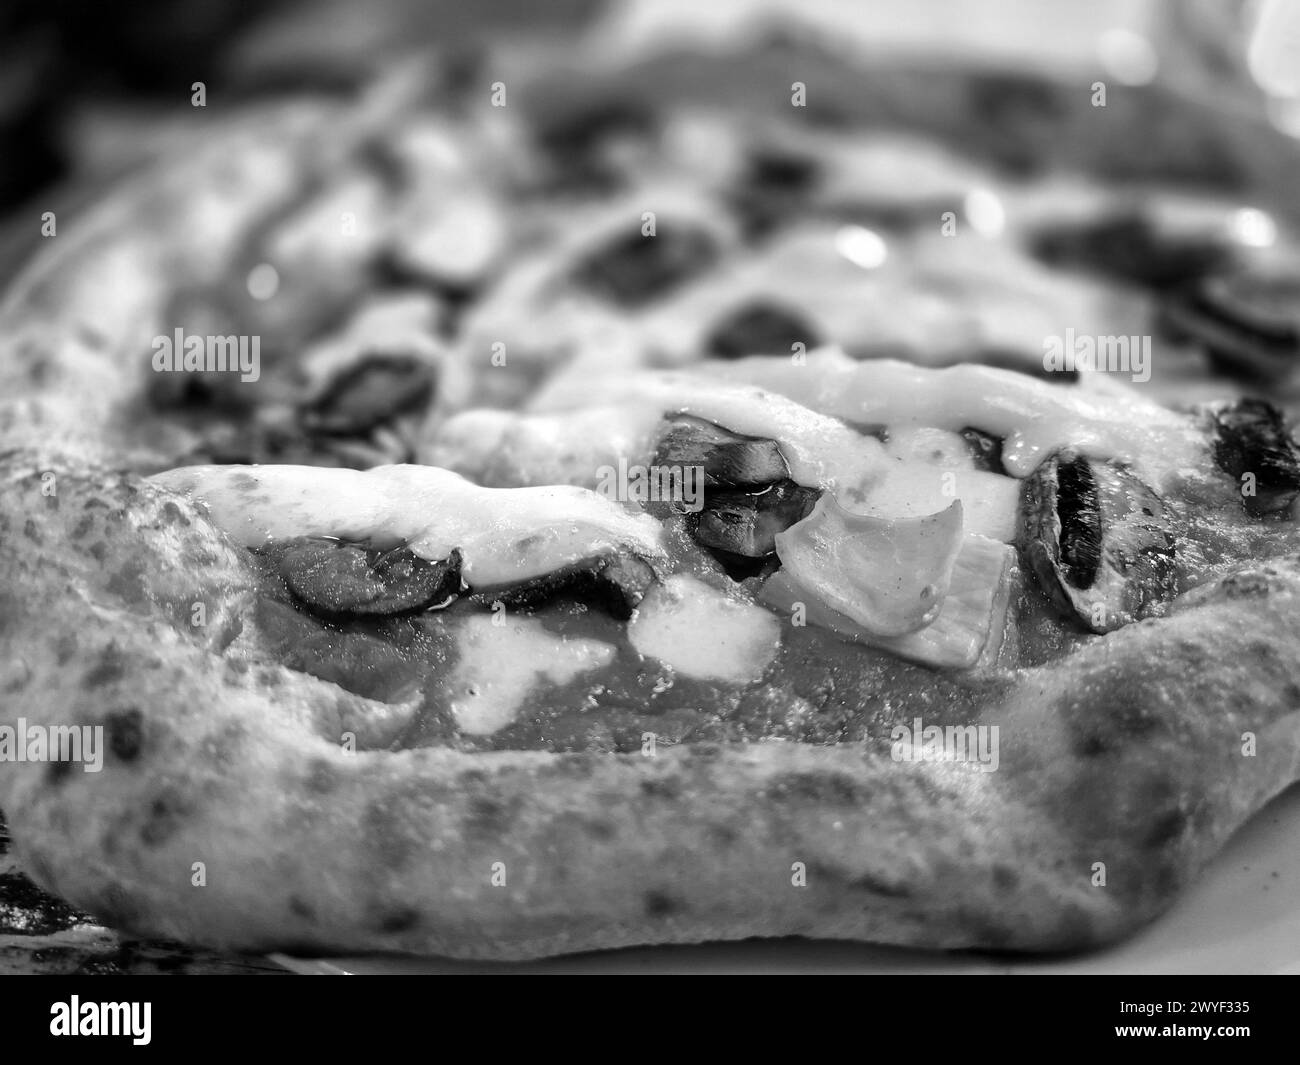 Savoureux pizza Fermer vue arrière-plan. Photo pizza noir et blanc Banque D'Images